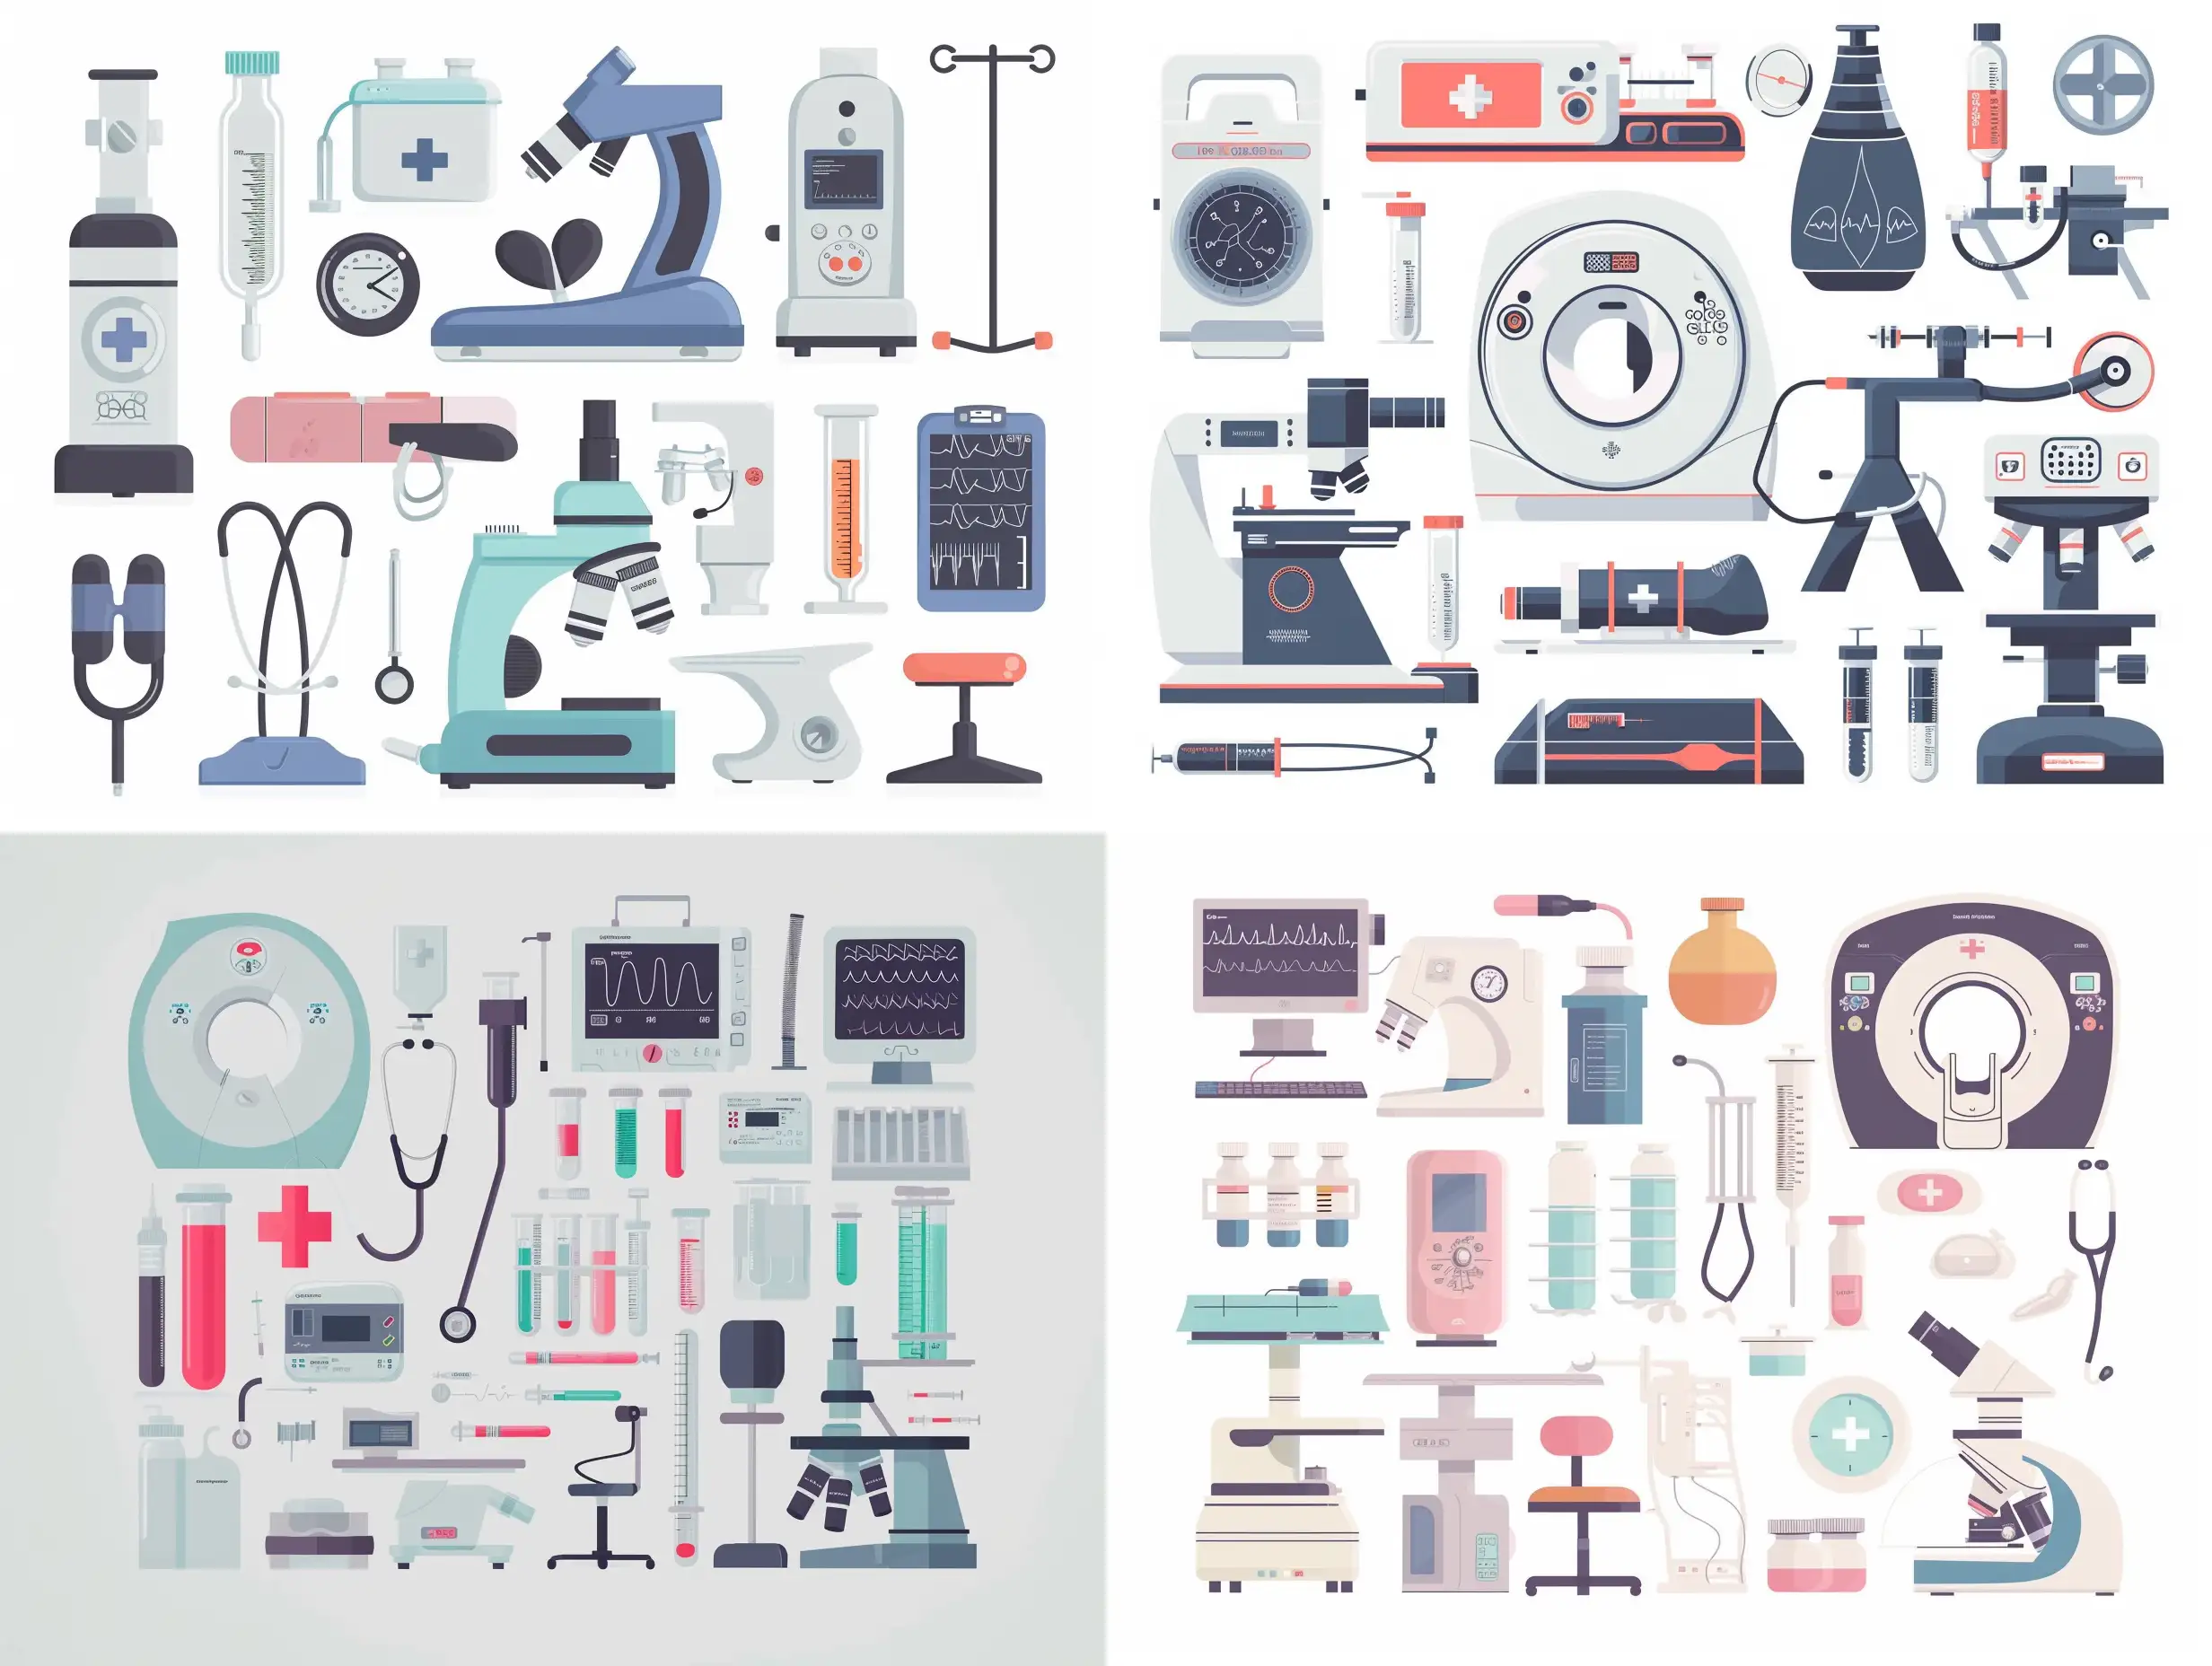 иллюстрация, медицинские приборы, стетоскоп, аппарат мрт, тонометр, термометр, микроскоп, исследования, все аккуратно упорядочено на белом простом фоне